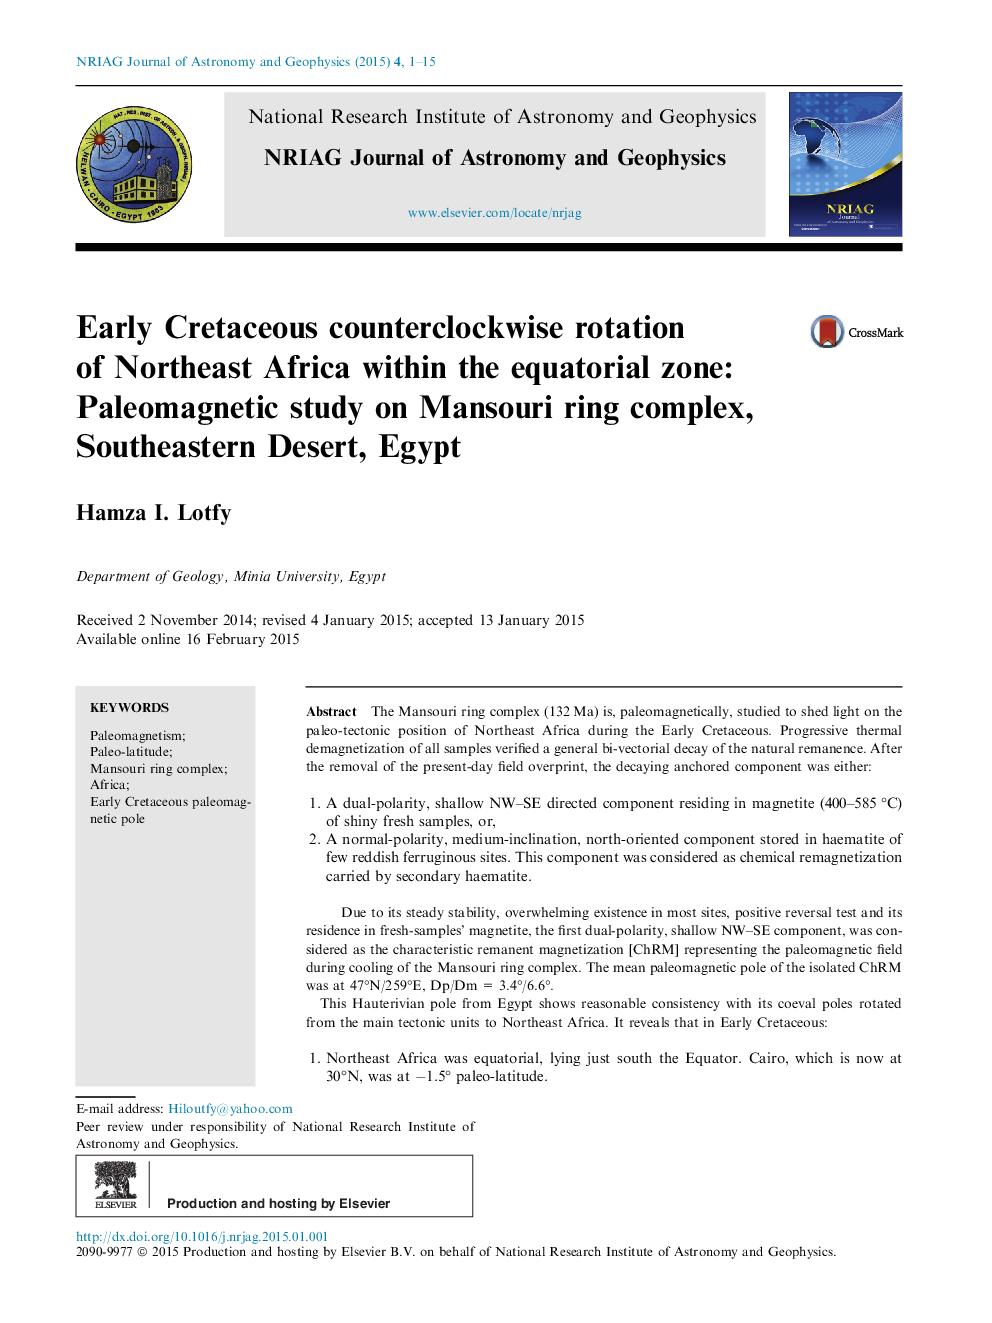 کرتاسه زود هنگام چرخش شمال آفریقا در ناحیه استوایی آن: حرکت پالموژنتیک روی مجموعه حلقه منصوری، صحرای جنوب شرقی، مصر 